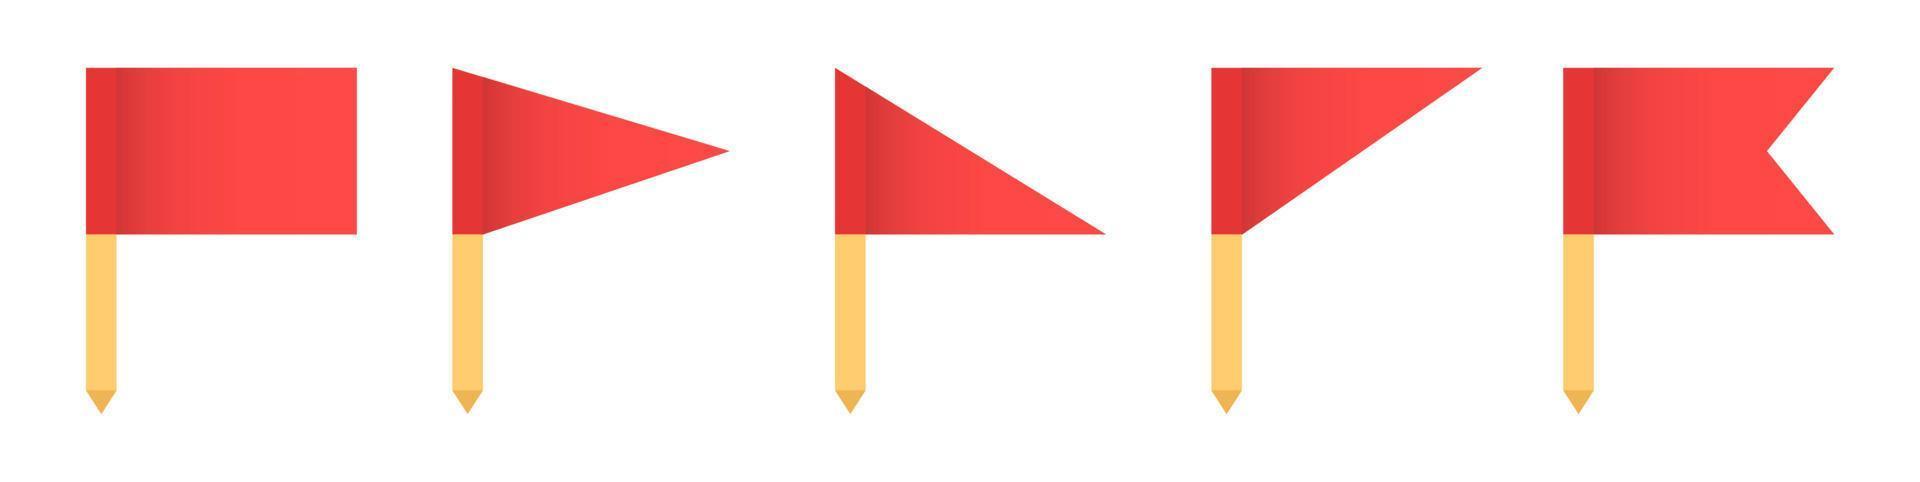 conjunto de ilustração em vetor ícone bandeira vermelha. bandeiras vermelhas no ícone de pautas amarelas. conceito de ponteiro, marca e sinal importante.